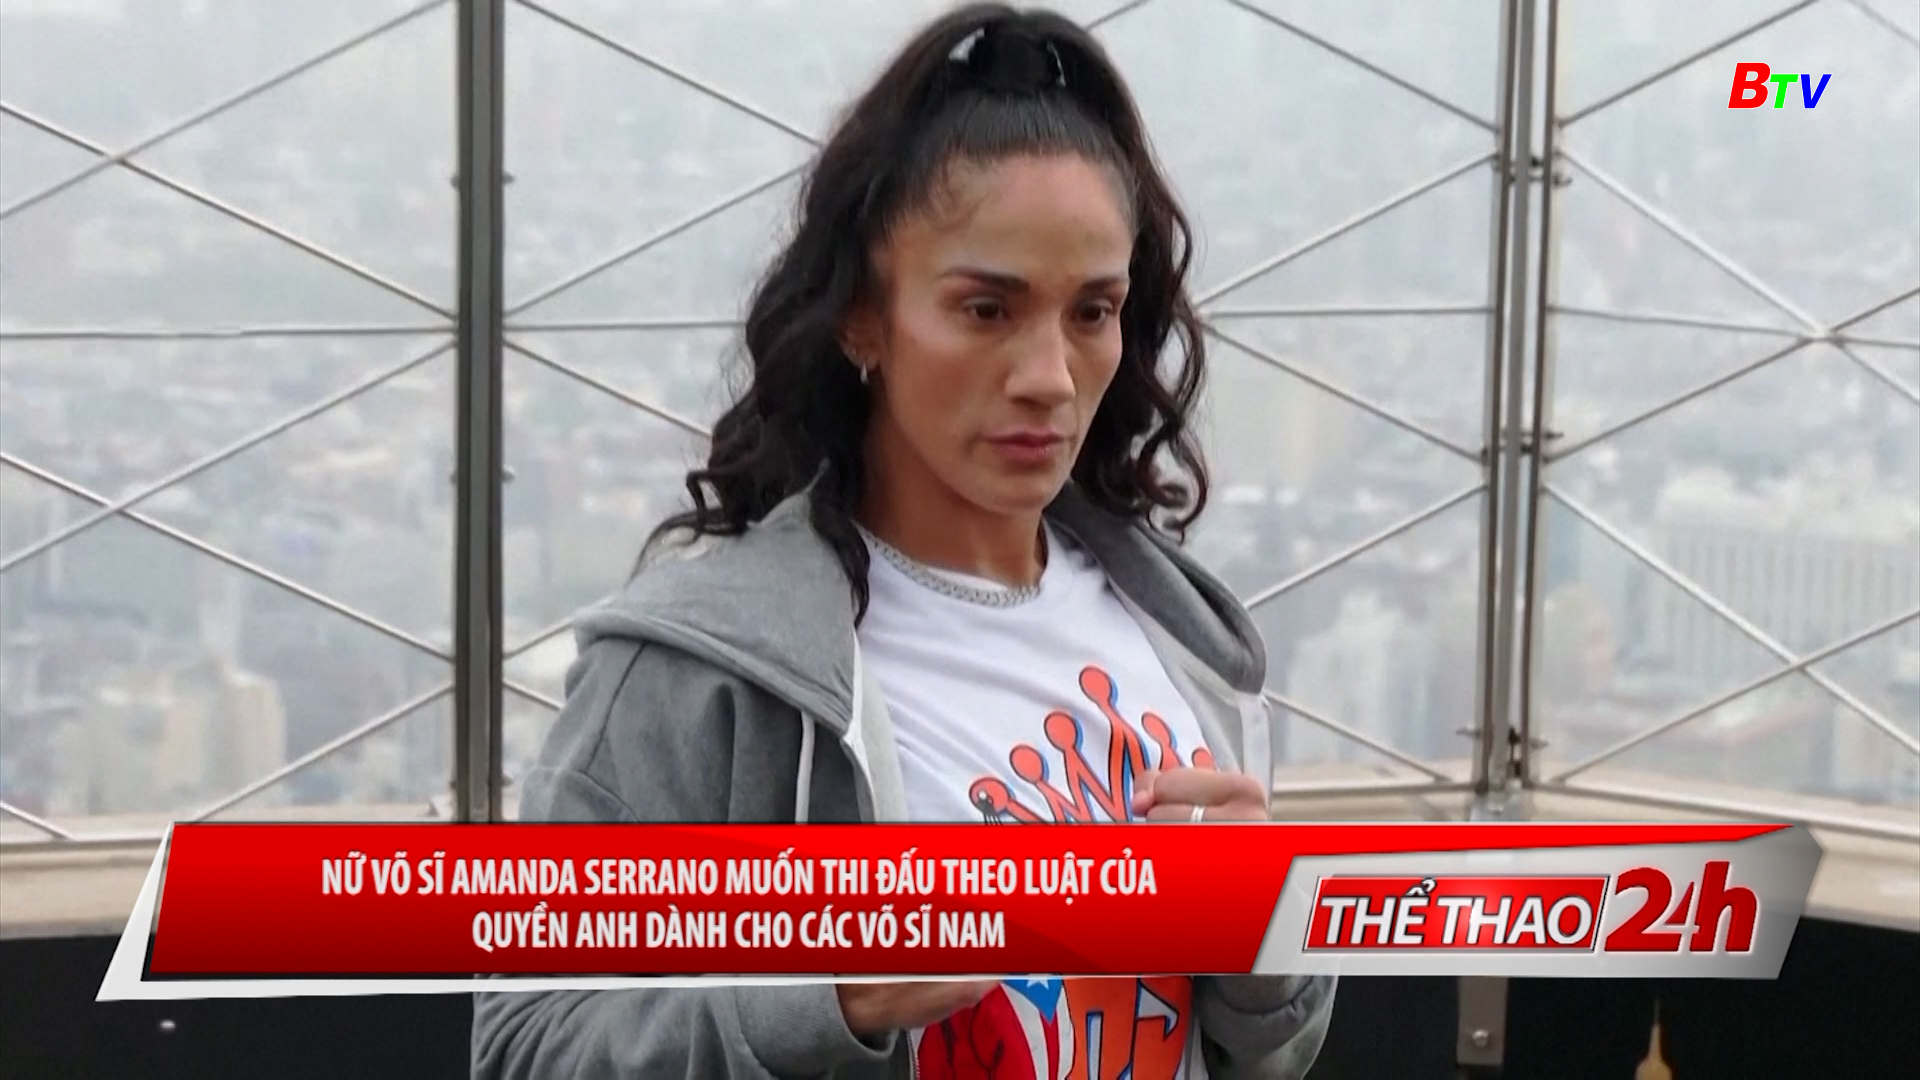 Nữ võ sĩ Amanda Serrano muốn được thi đấu theo luật của quyền Anh dành cho các võ sĩ nam | Tin thể thao 24h